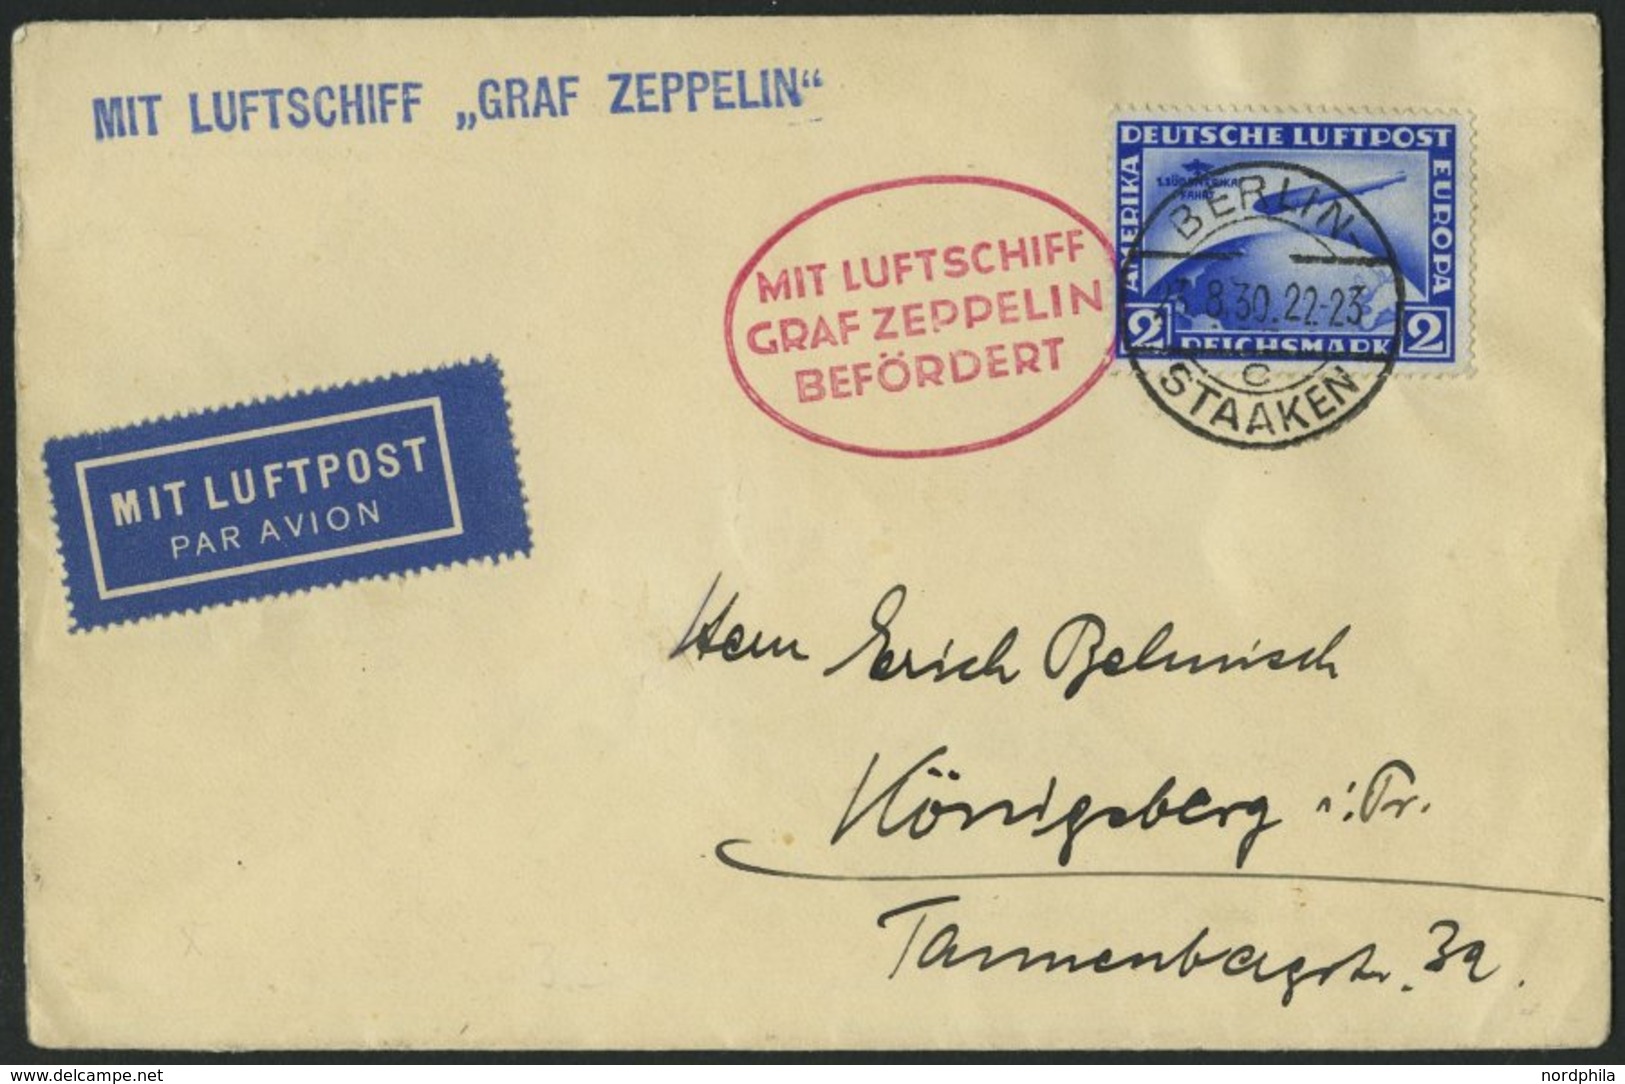 ZEPPELINPOST 80Bb BRIEF, 1930, Ostpreußenfahrt, Auflieferung Berlin, Frankiert Mit 2 RM Südamerikafahrt, Prachtbrief - Zeppeline